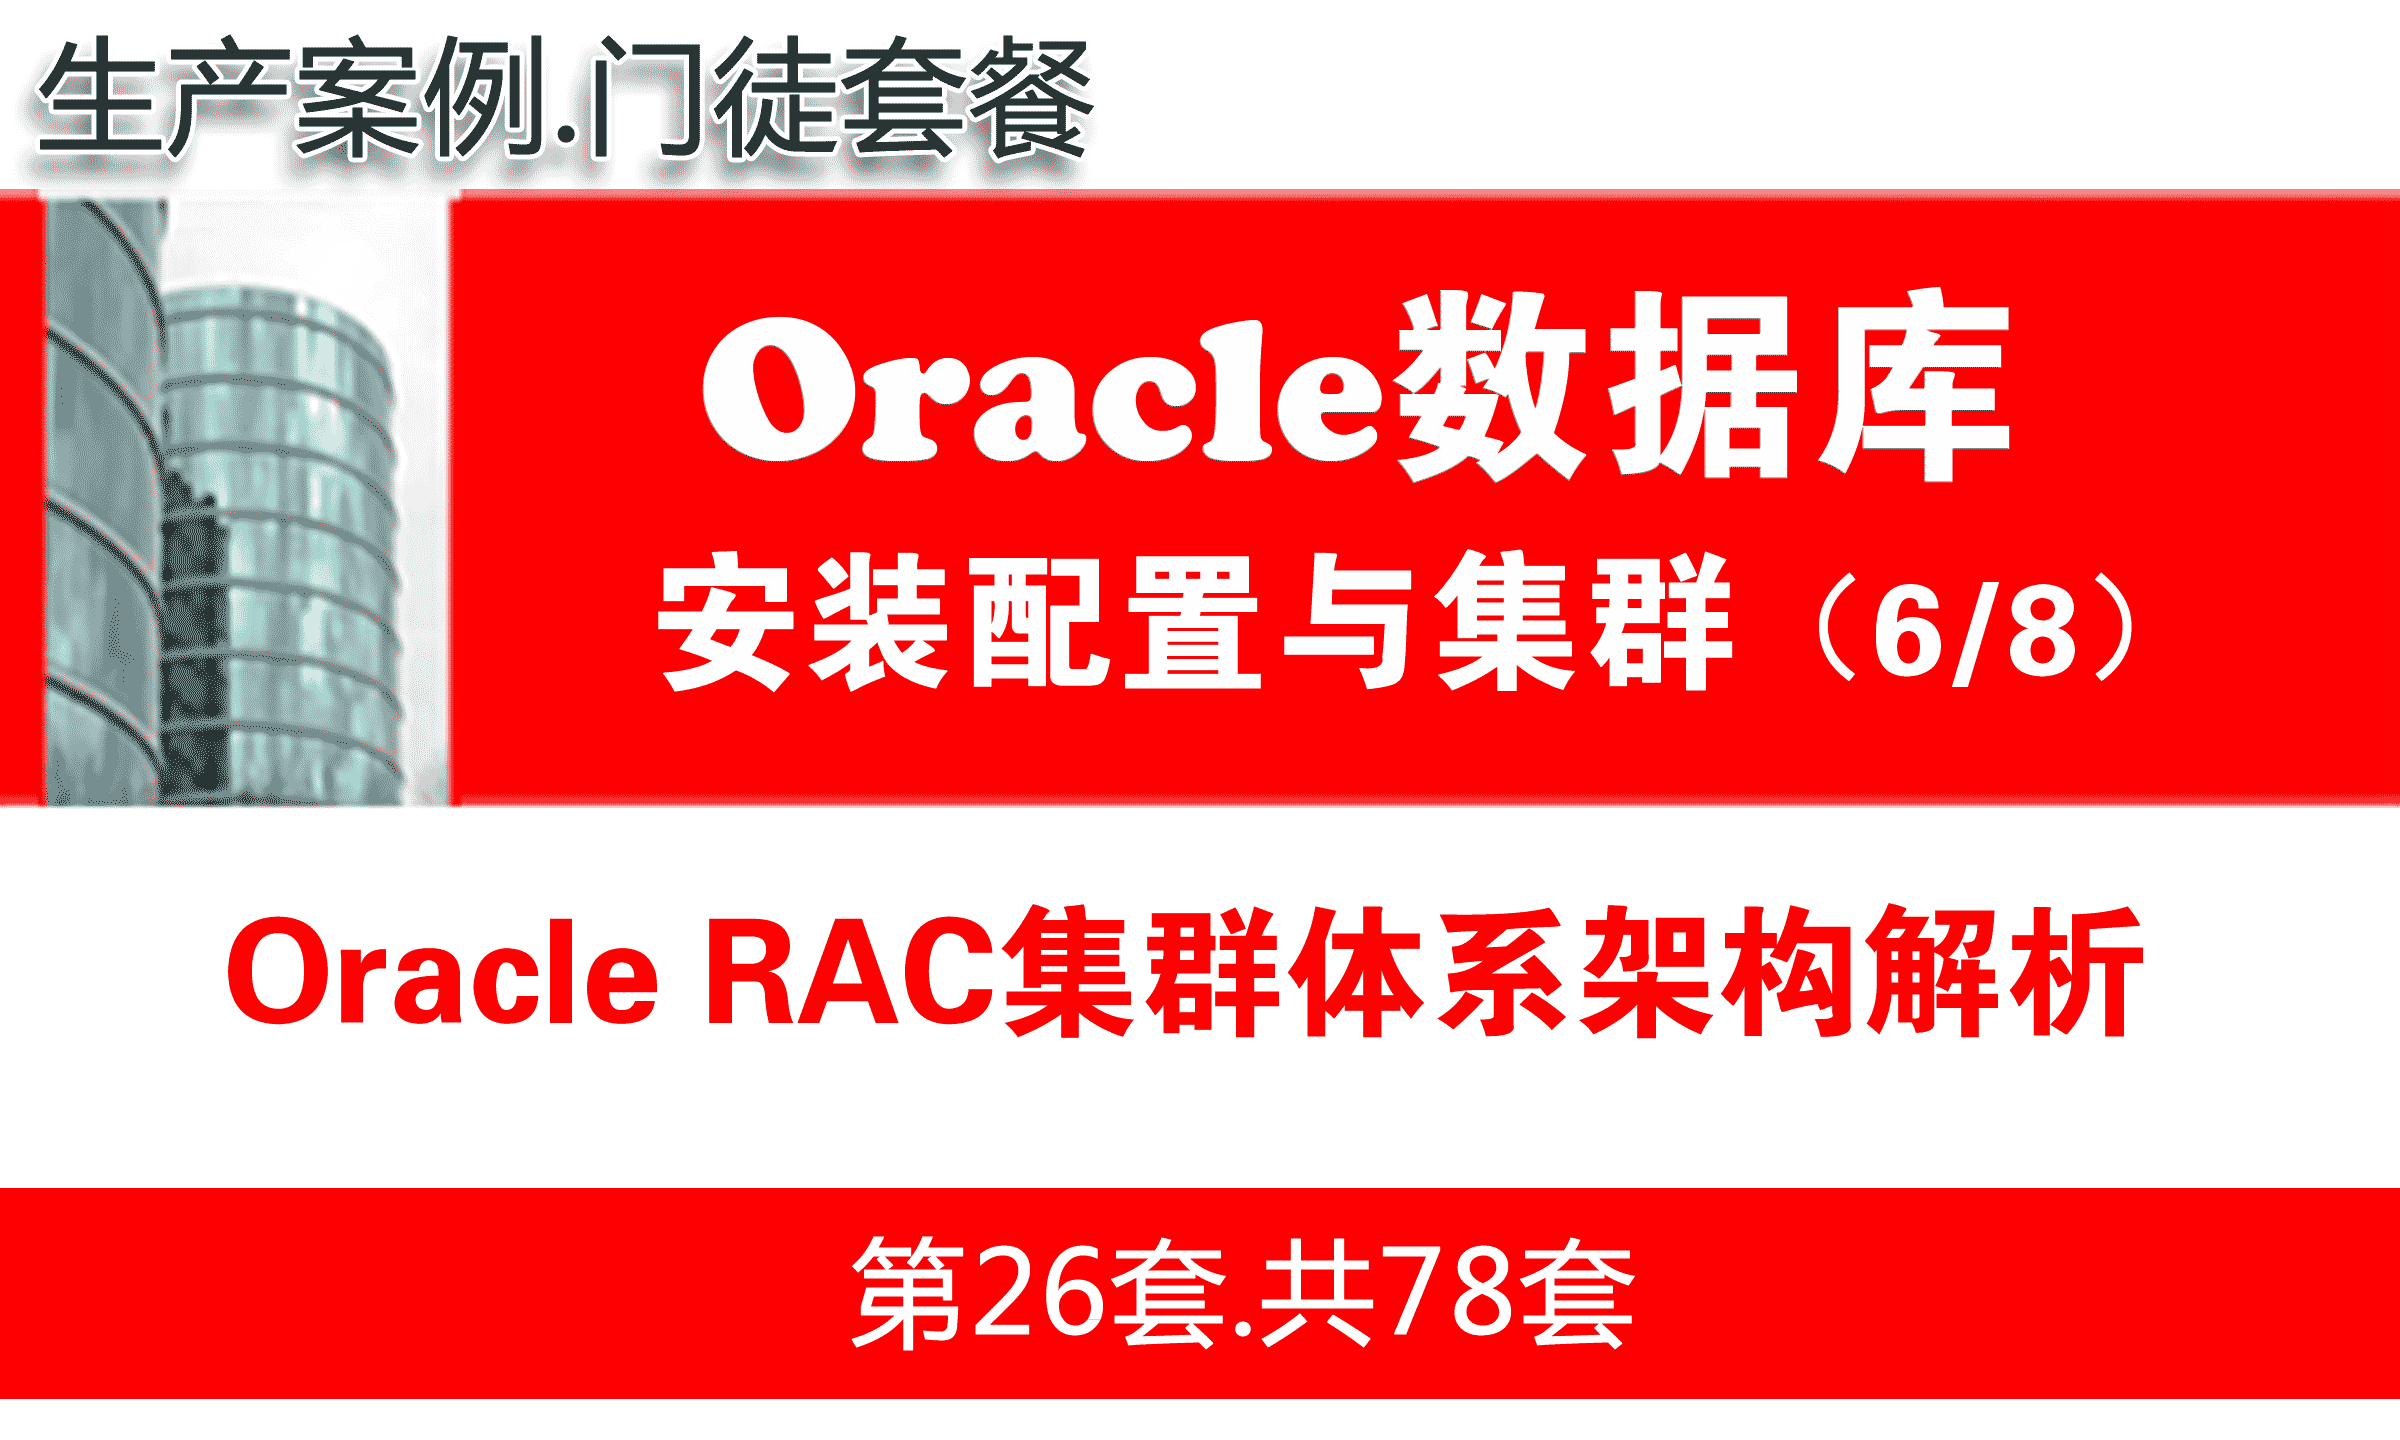 Oracle RAC数据库集群入门培训教程_Oracle RAC体系架构解析_OracleRAC教程